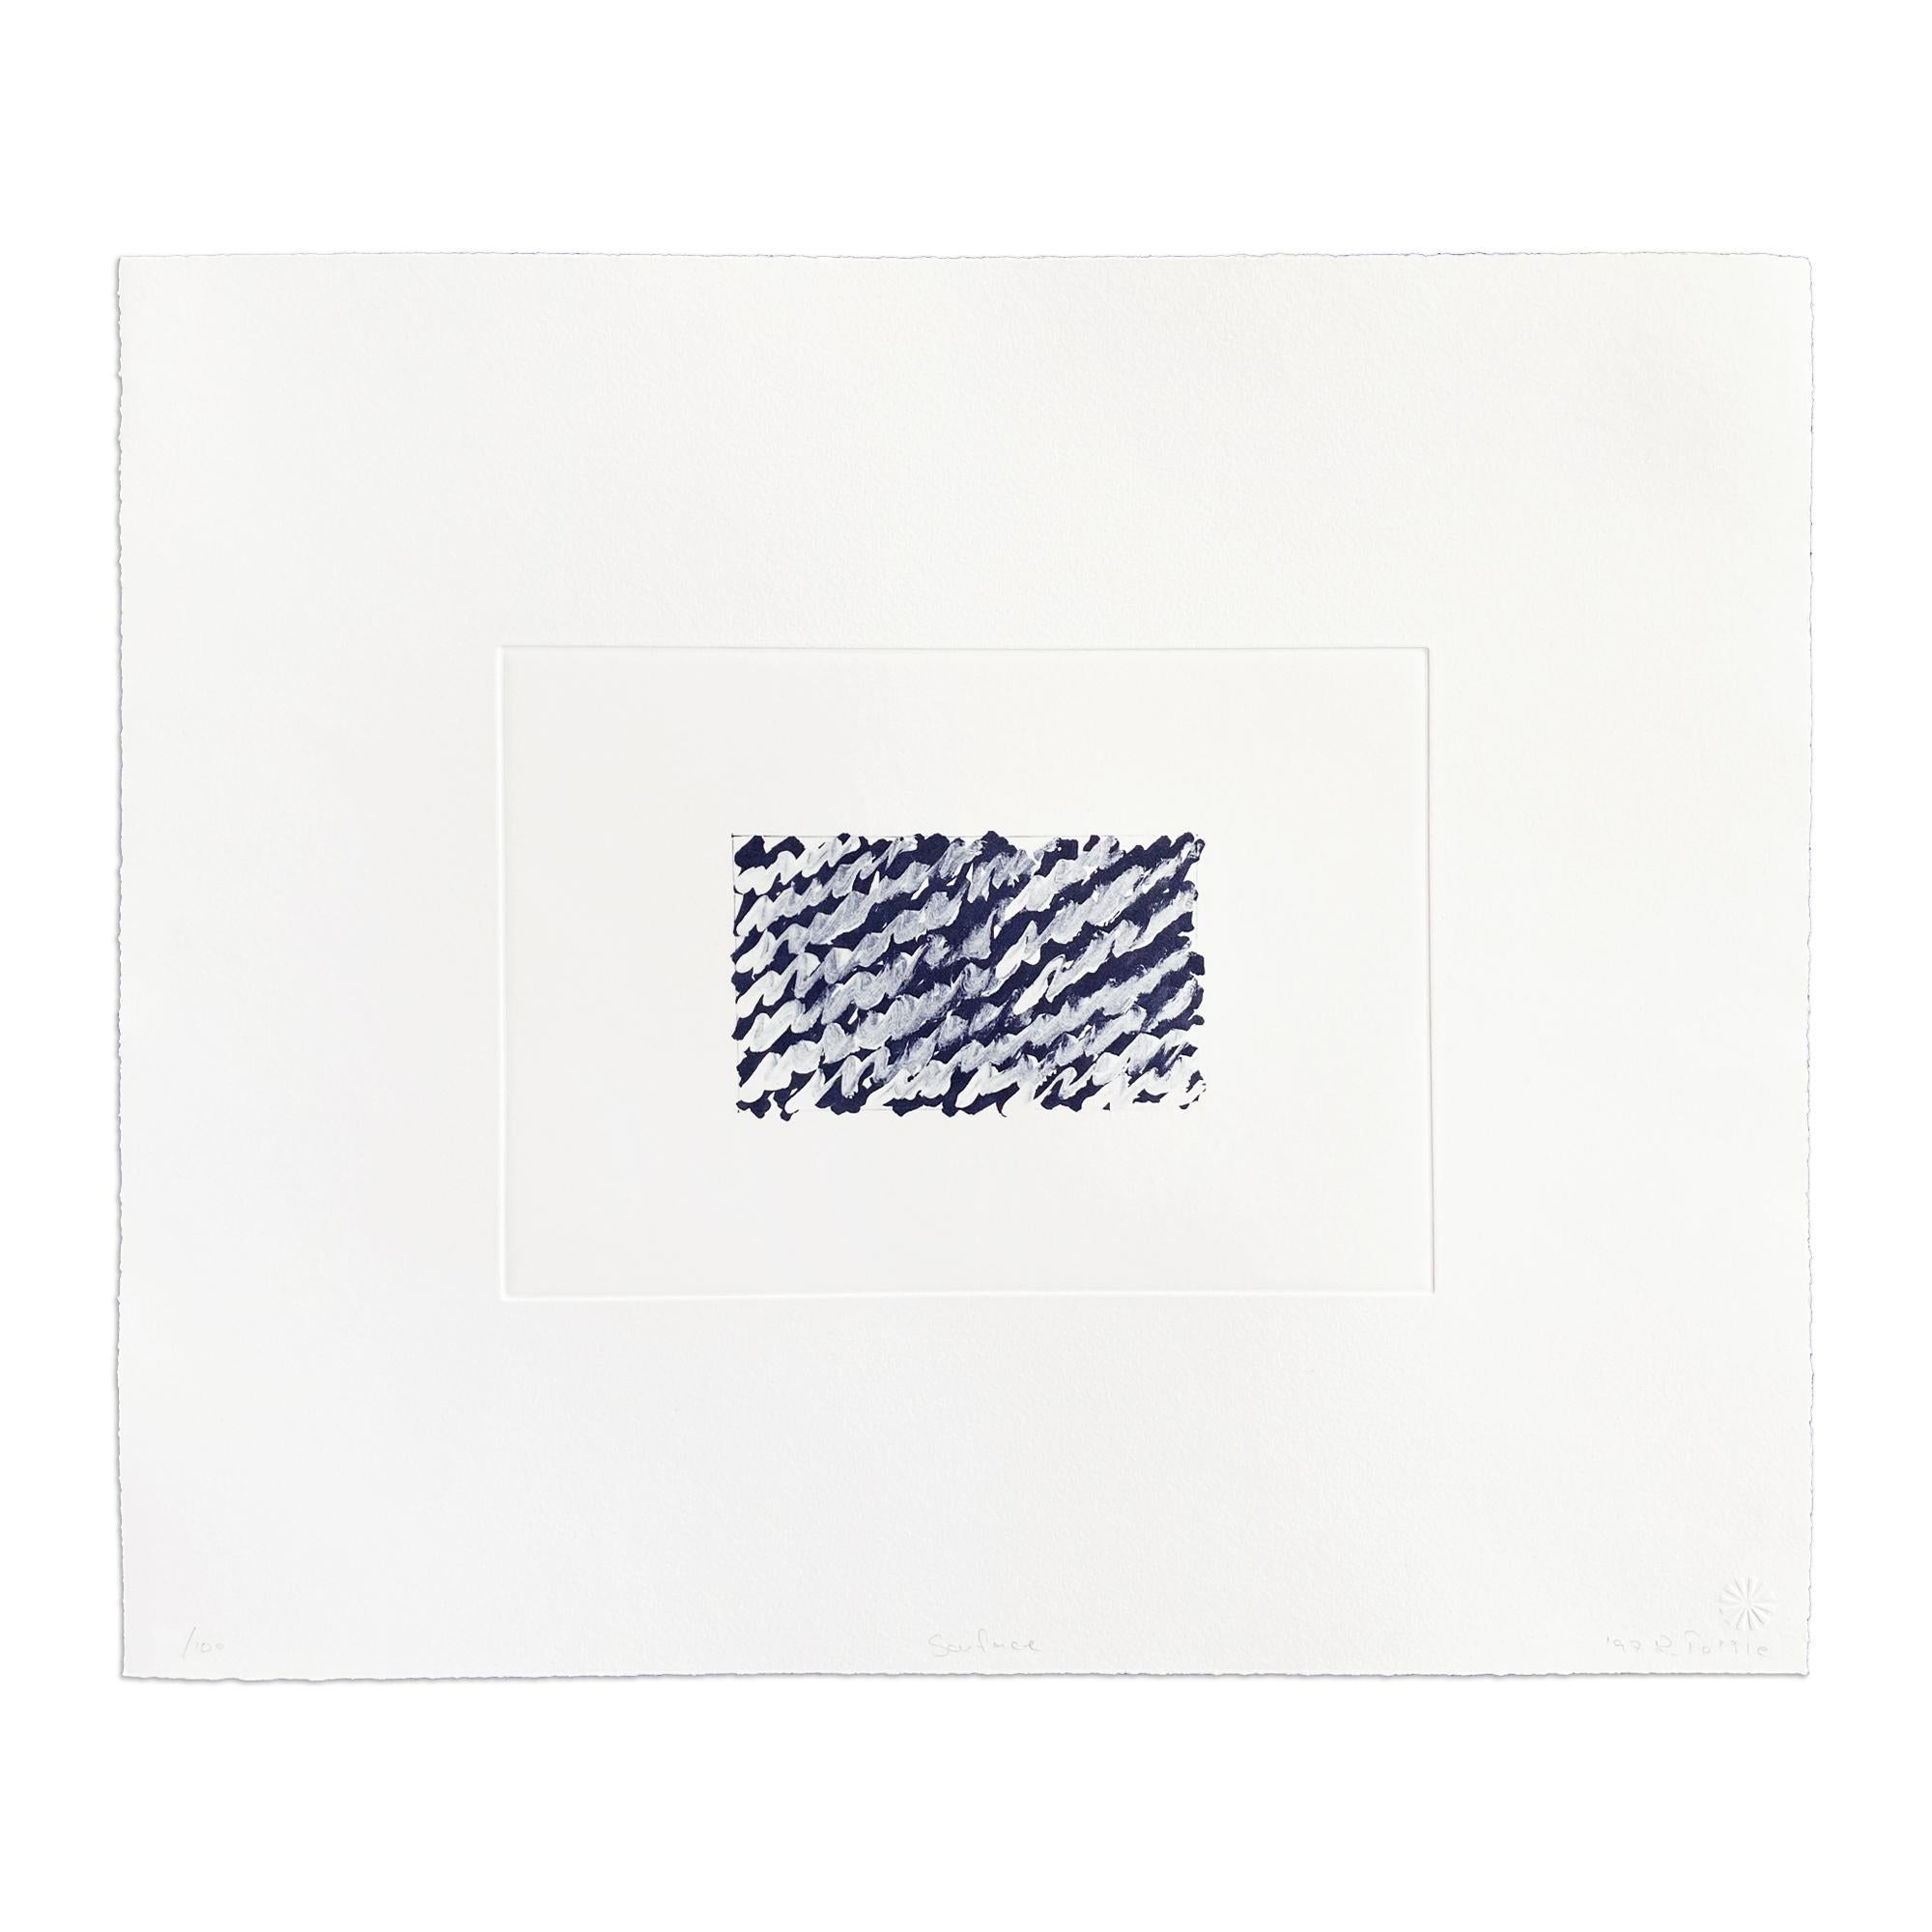 Richard Tuttle (Amerikaner, geb. 1941)
Oberfläche, 1997
Medium: Photogravüre auf Velinpapier
Abmessungen: 15 x 17-3/4 Zoll
Auflage von 100 Stück: handsigniert und nummeriert
Zustand: Ausgezeichnet